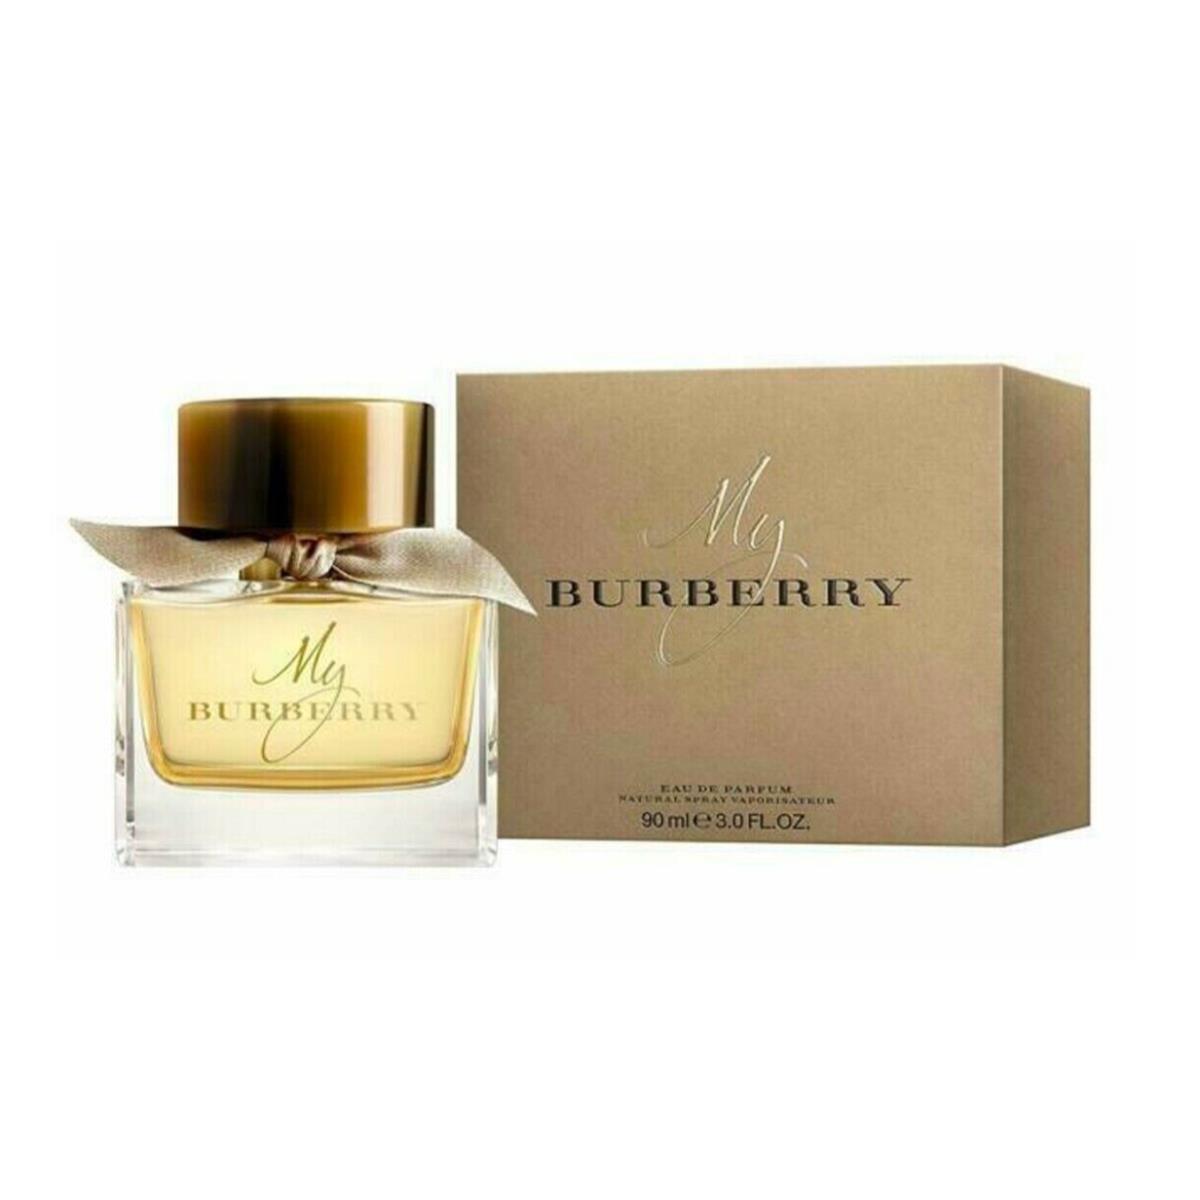 My Burberry by Burberry Eau de Parfum Spray For Women 3.0oz